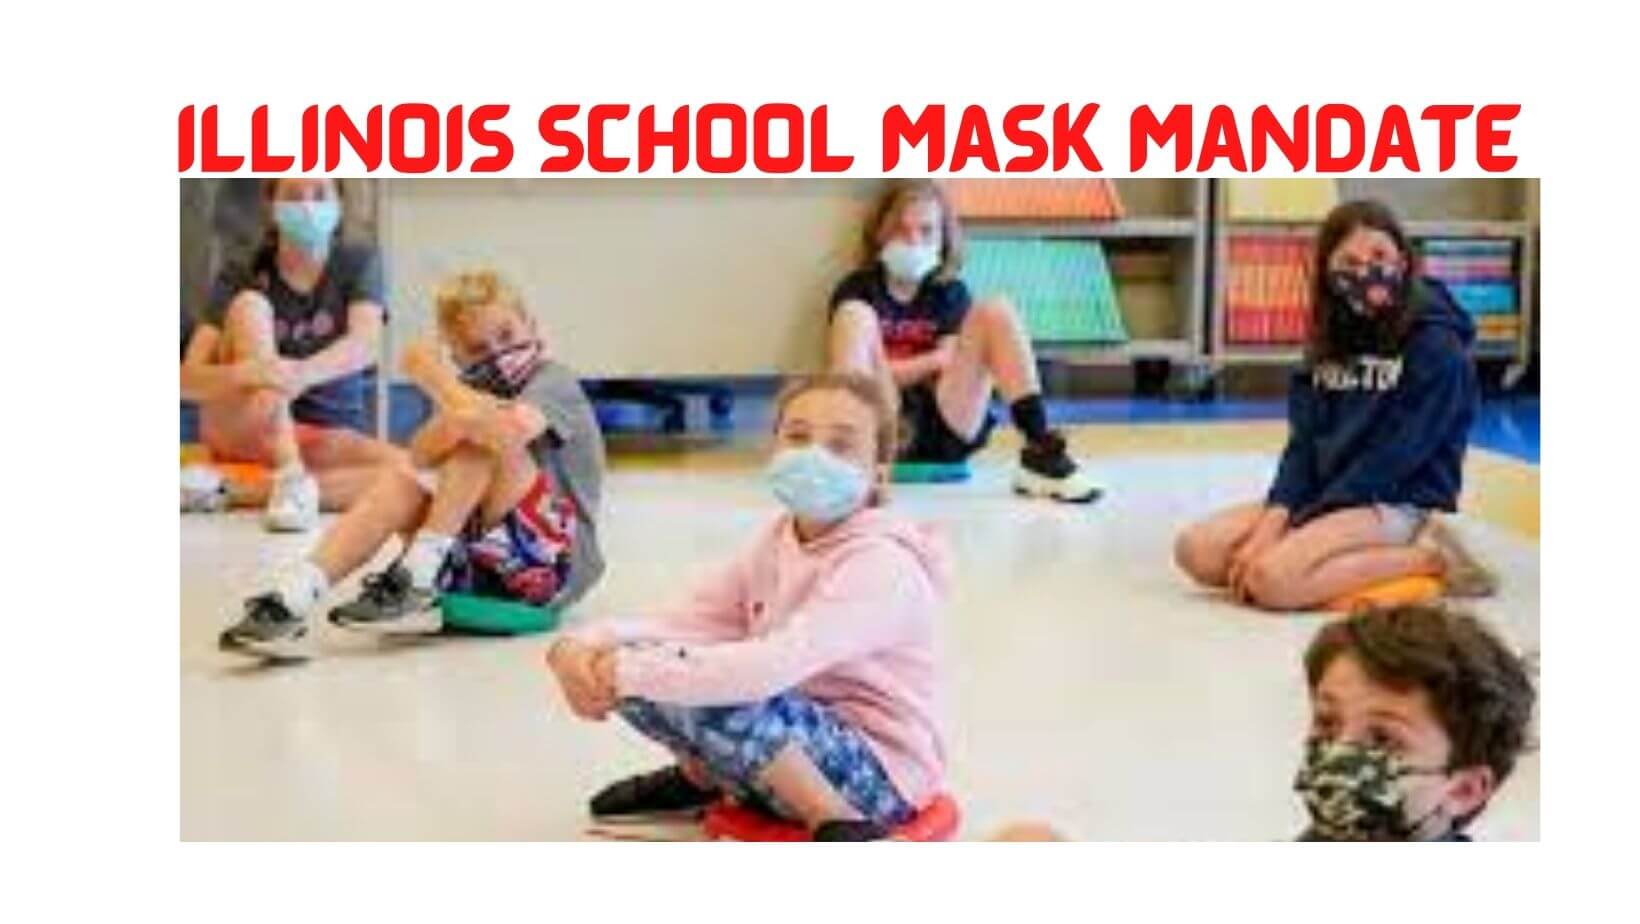 Illinois school mask mandate